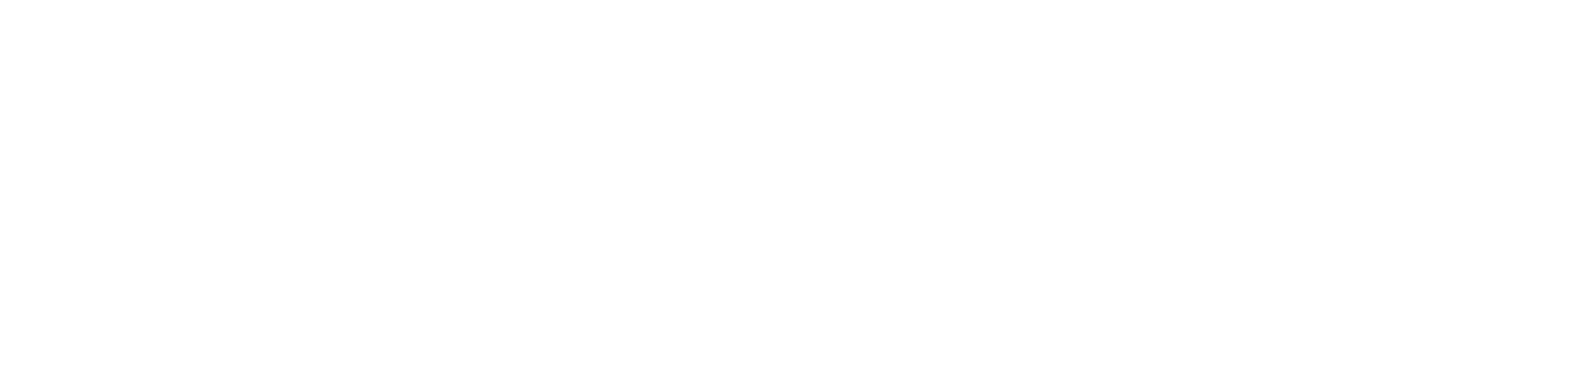 OHB SE logo for dark backgrounds (transparent PNG)